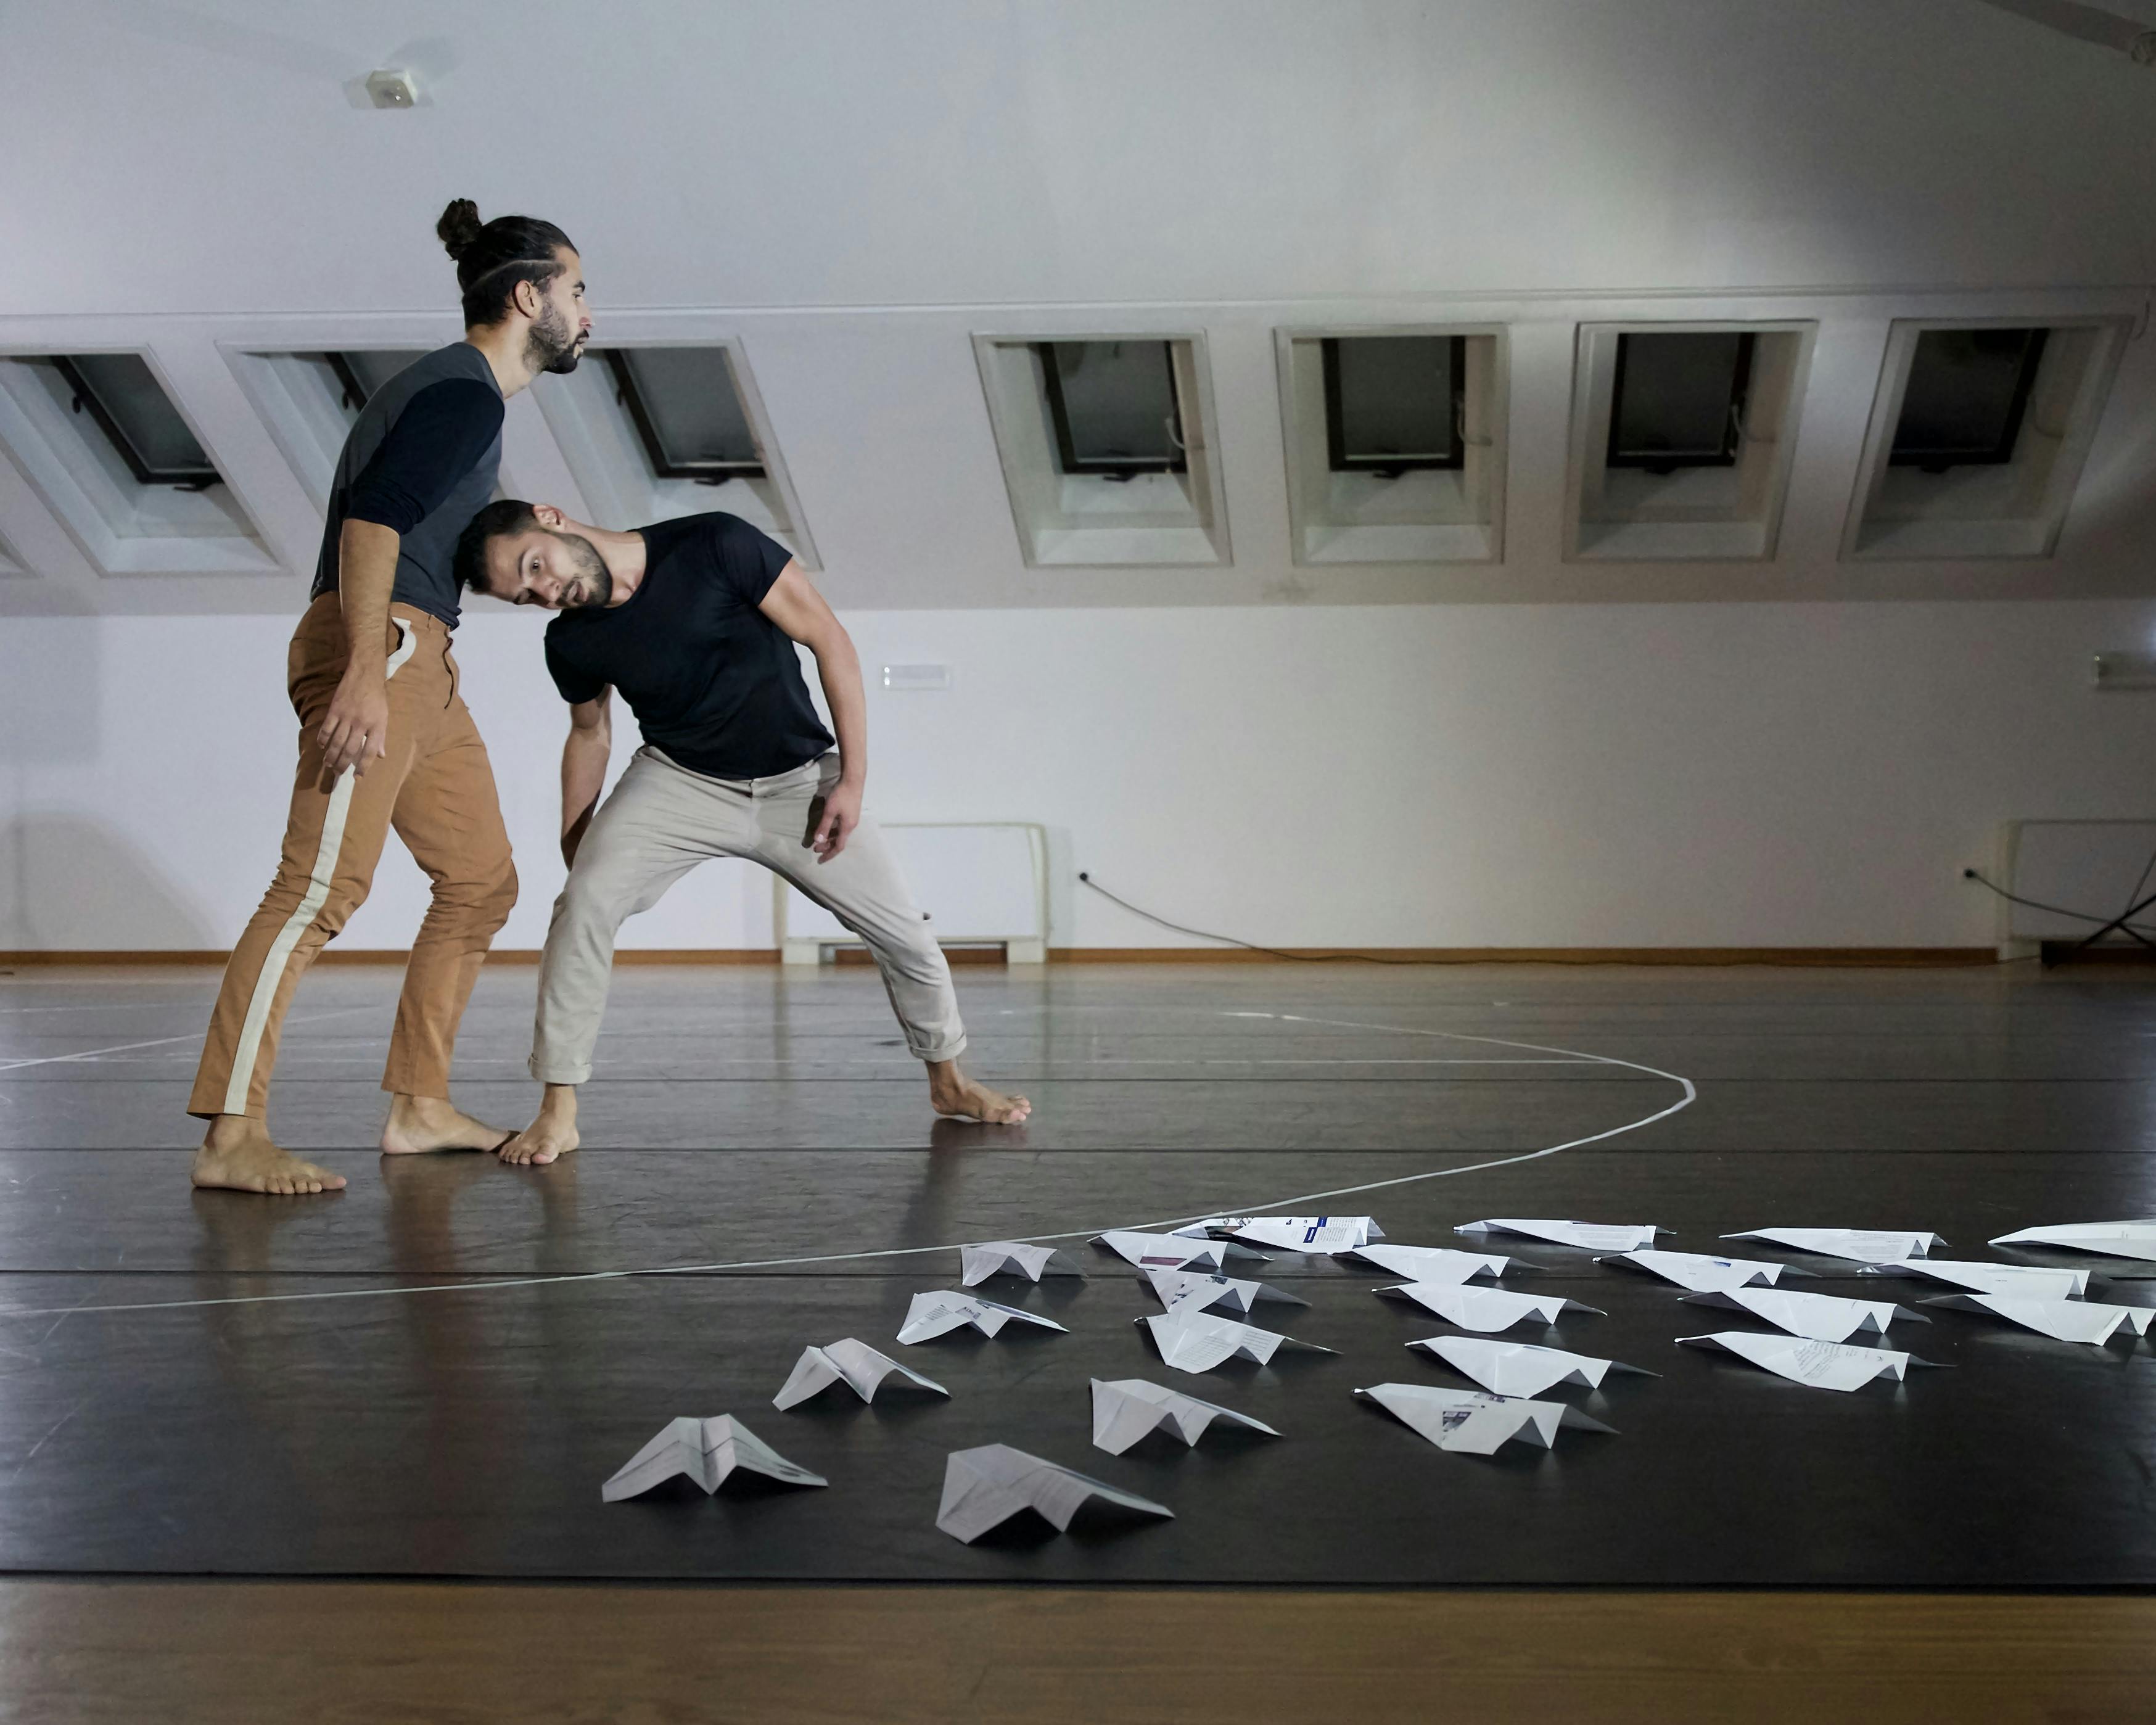 I due coreografi e danzatori provano in sala: uno dei due appoggia il proprio peso sulla testa dell'altro, piegato per sostenerlo. Per terra ci sono numerosi areoplanini di carta disposti a triangolo. 